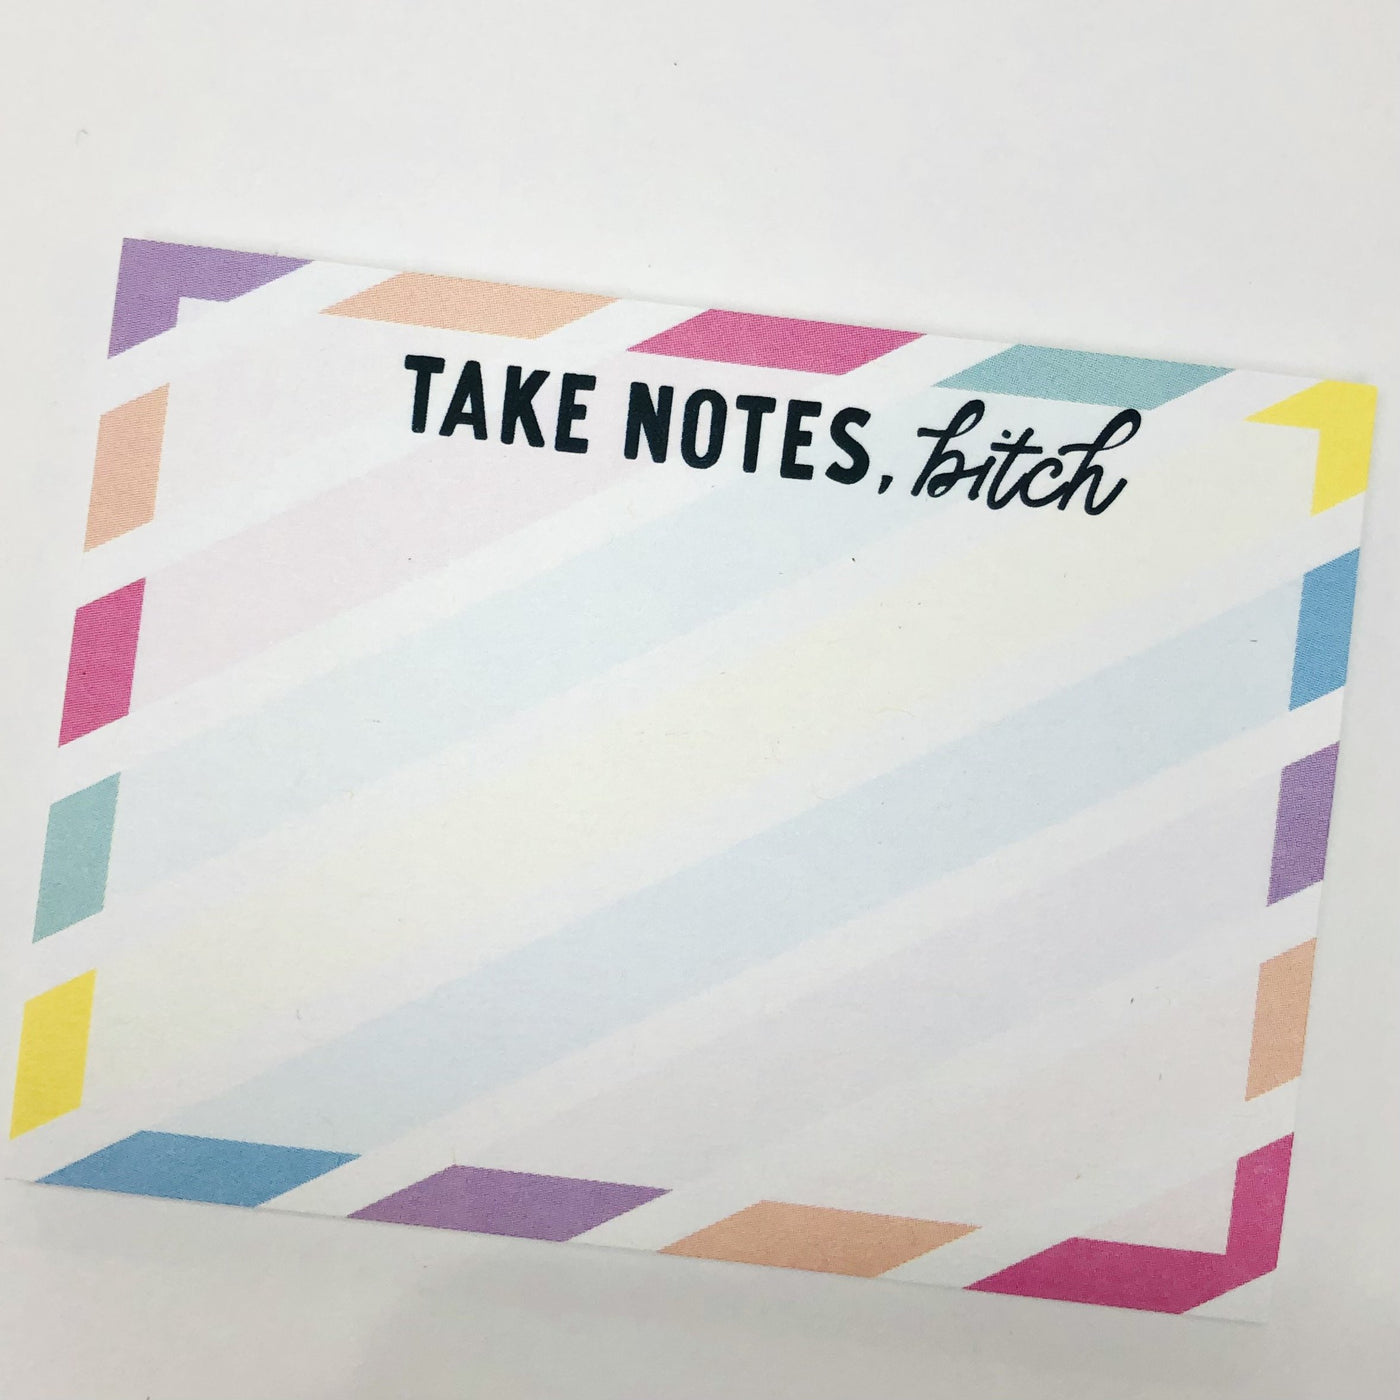 Funny Sticky Notes